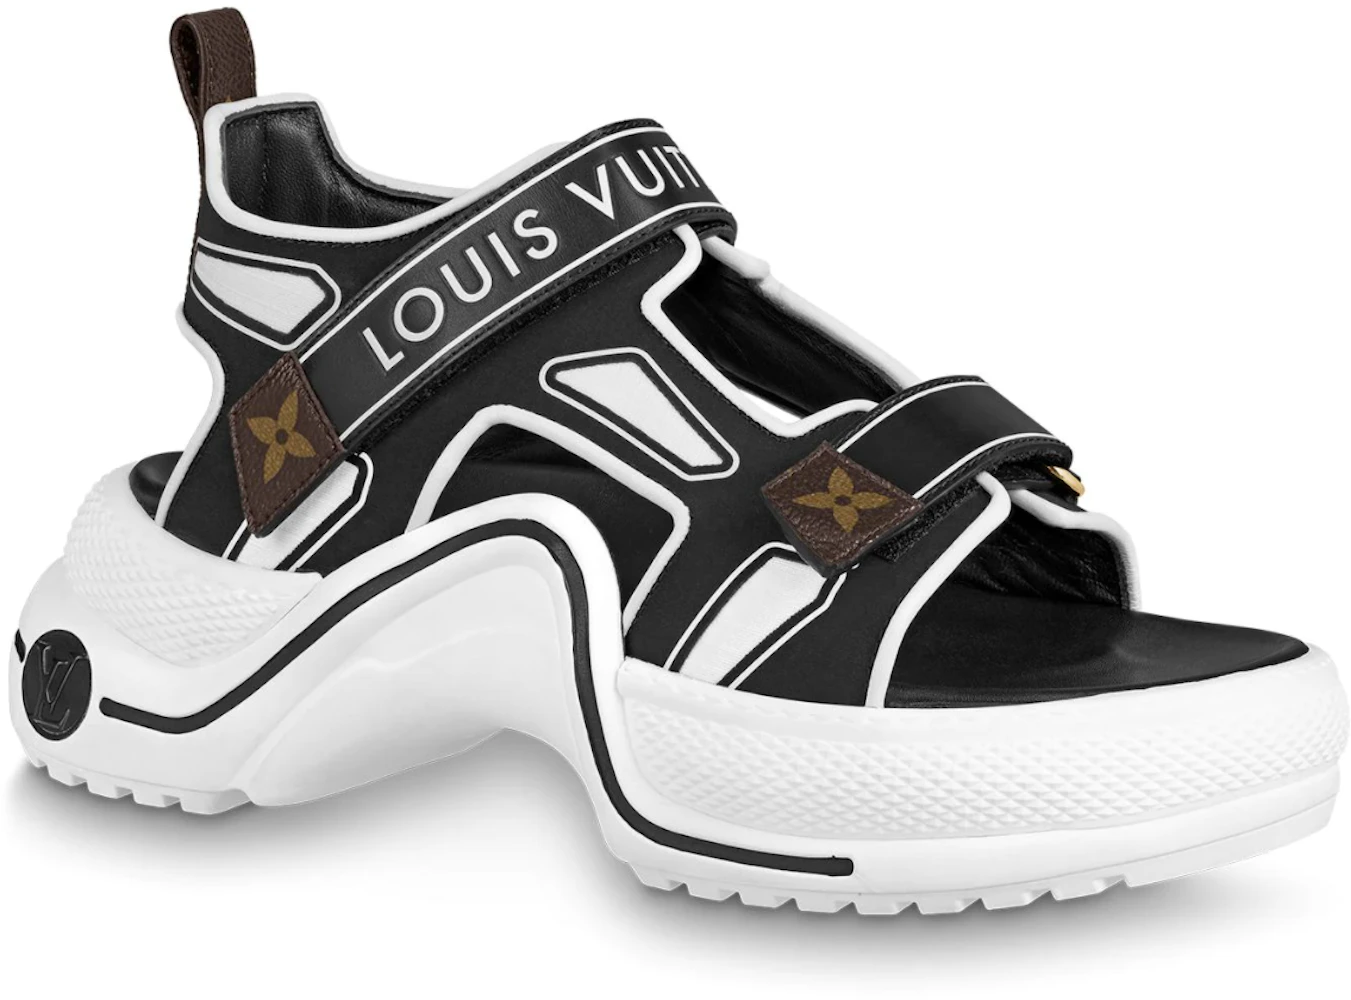 Louis Vuitton Archlight Sandal Black White (Women's) - 1A7U60 - GB